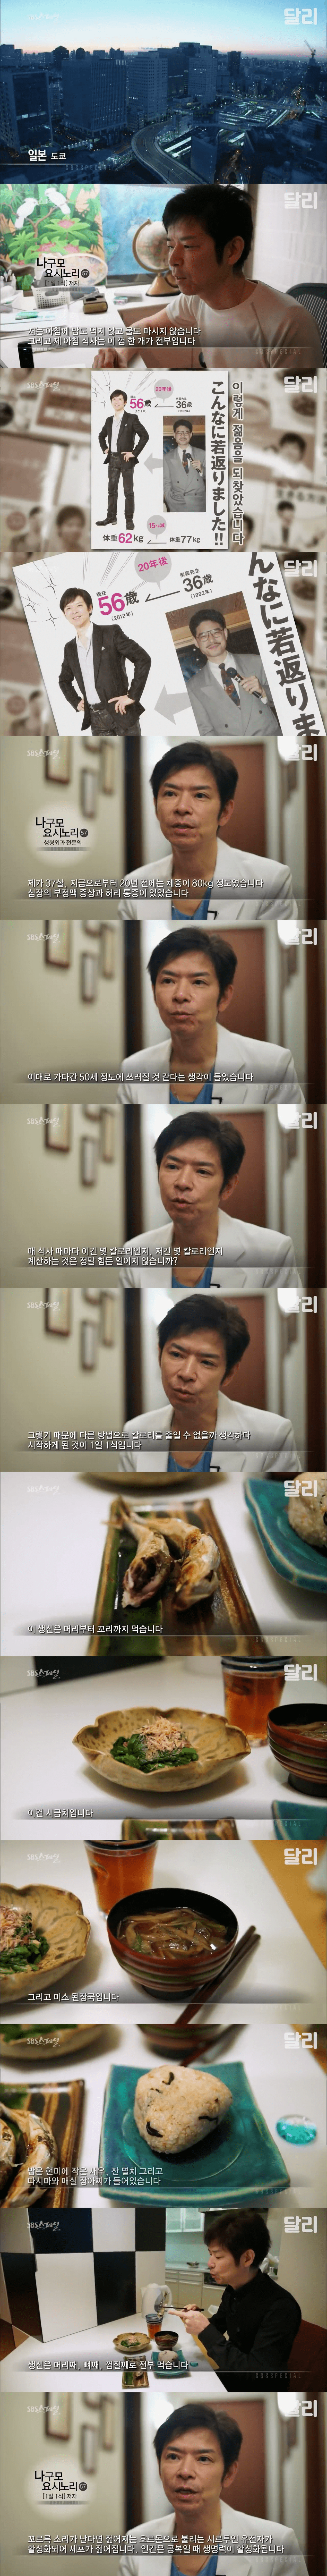 일본 50대 의사의 젊어진 비법.JPG